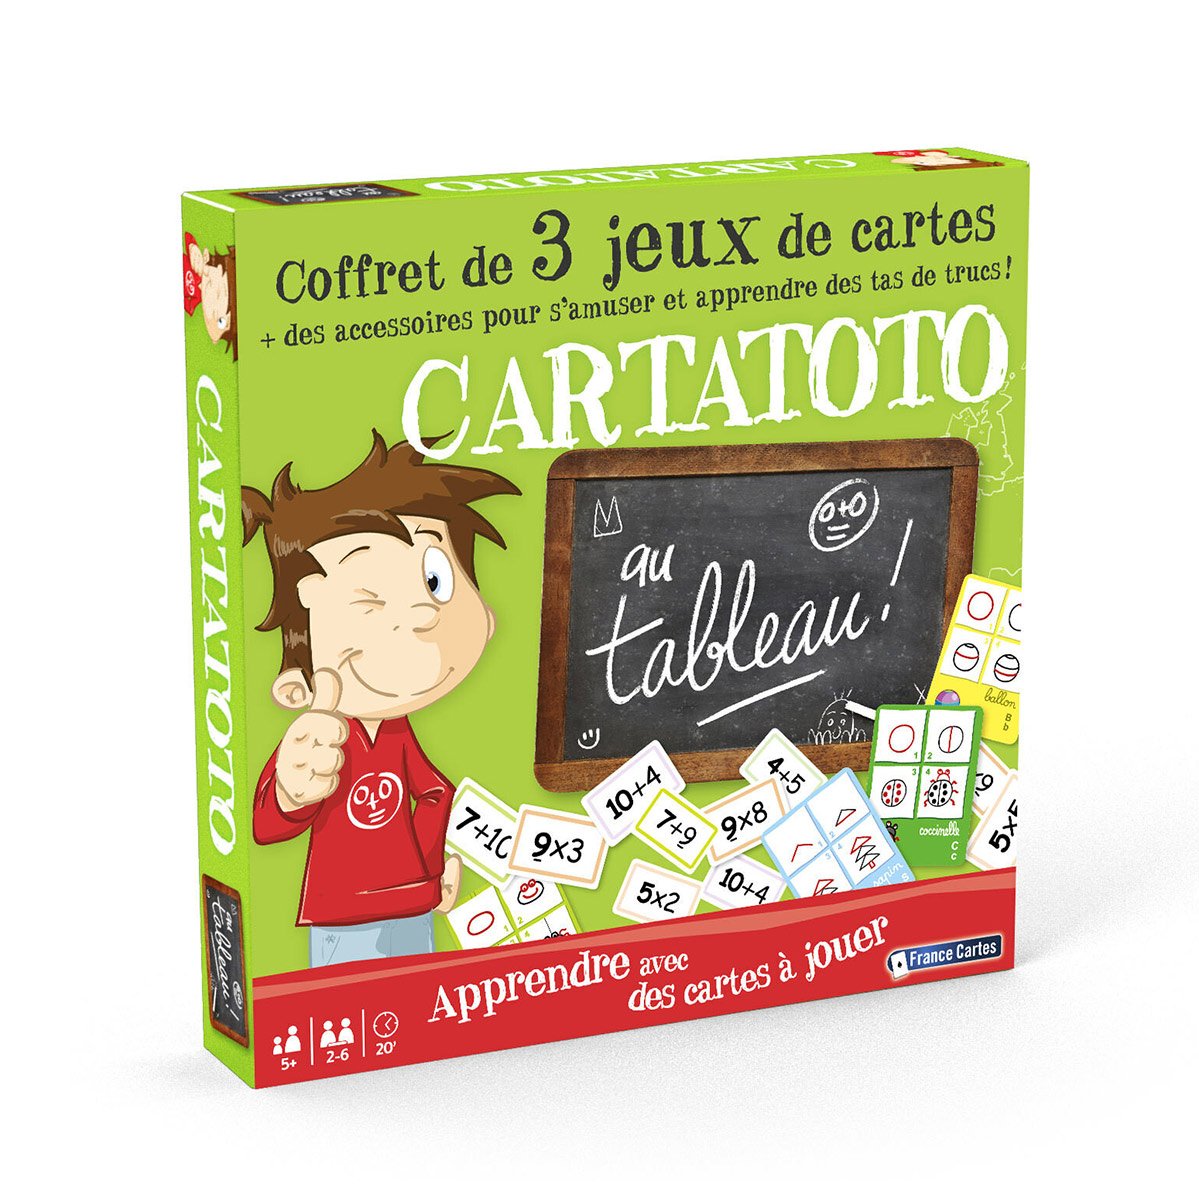 Coffret 3 jeux - Cartatoto au tableau